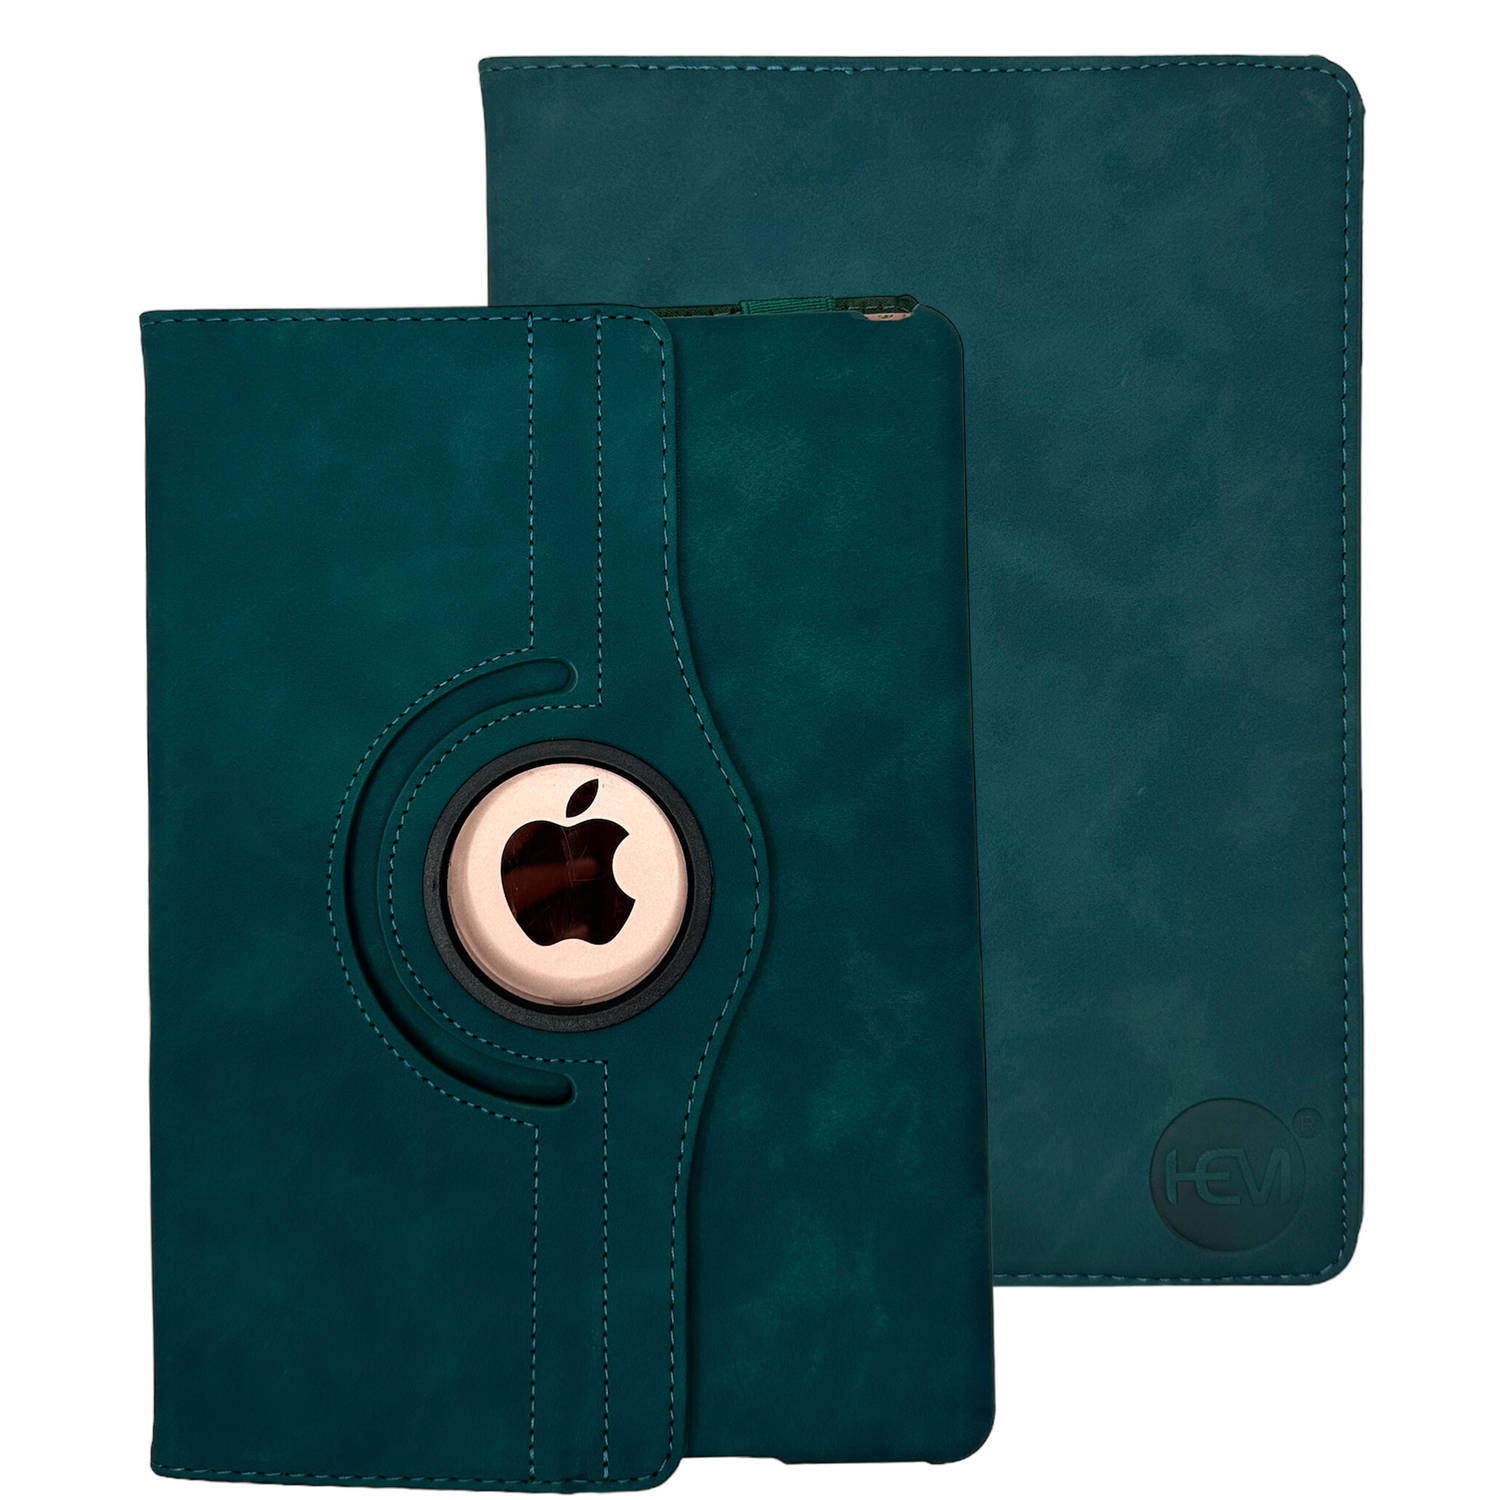 HEM Silky Green iPad hoes geschikt voor iPad Pro 12.9 (2018-2020-2021-2022) 12.9 inch Draaibare Auto